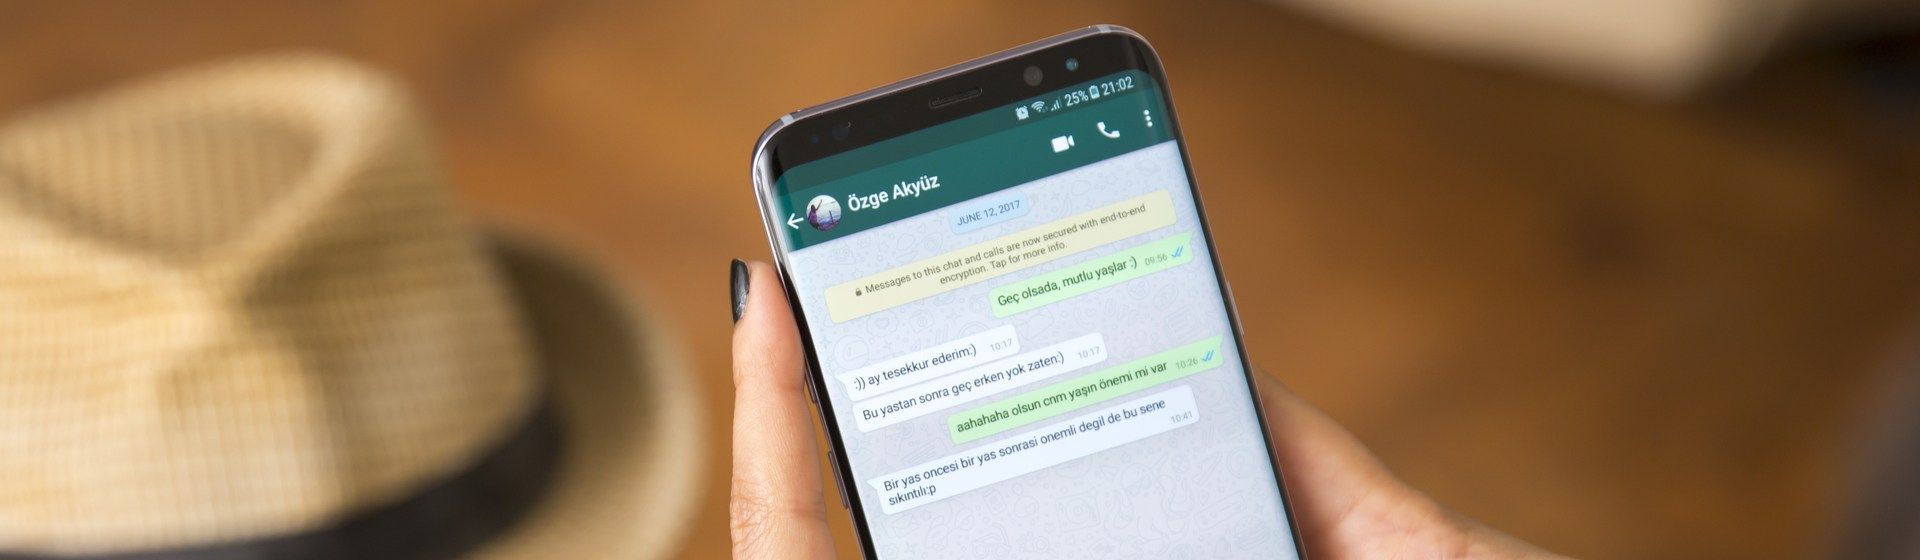 WhatsApp GB: por que faz tanto sucesso? Veja funções e riscos